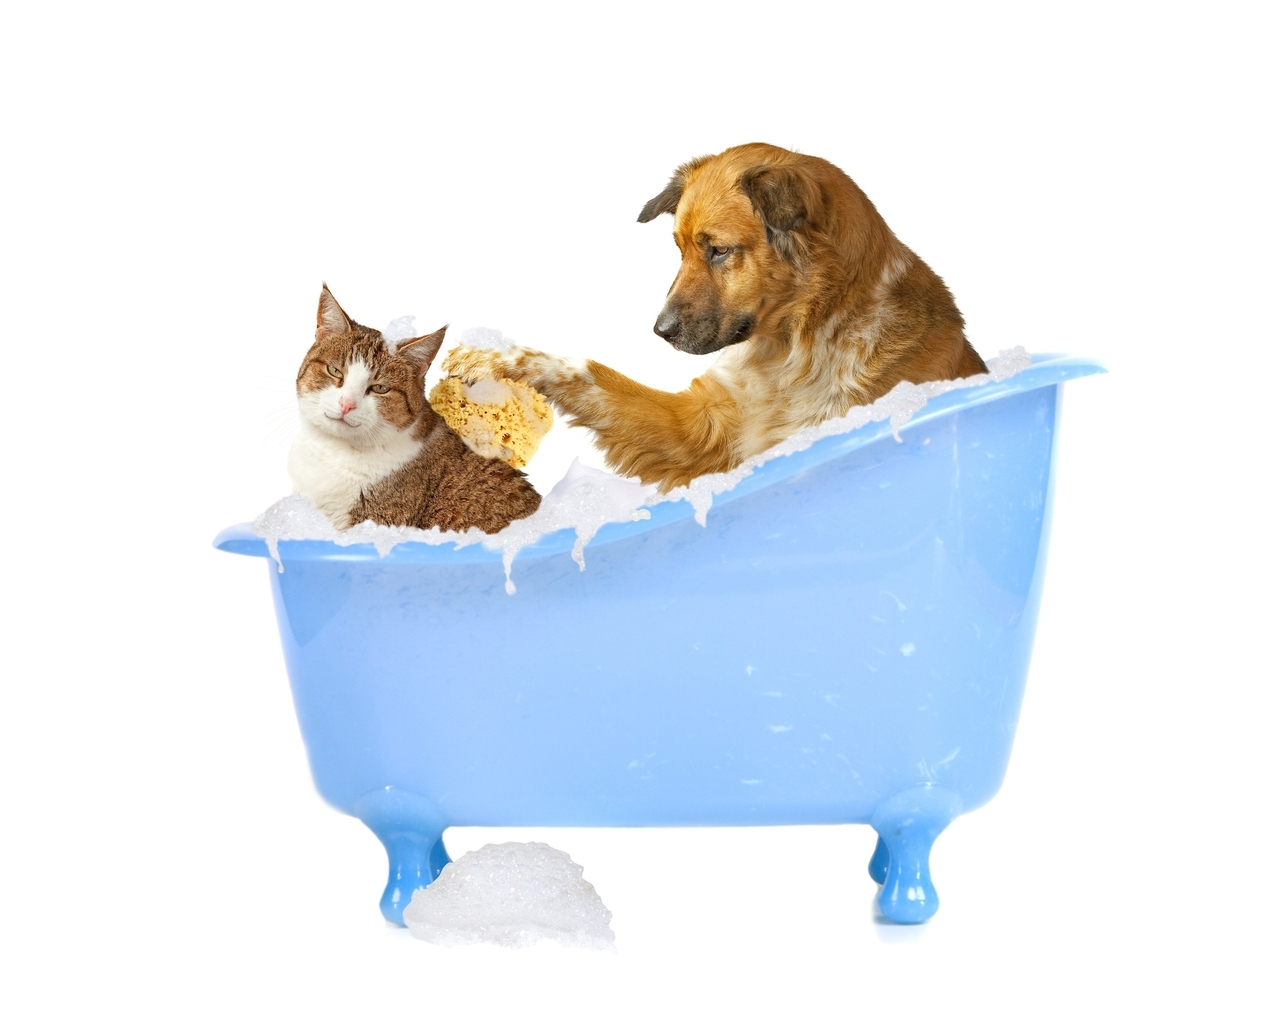 Image: Animals, dog, cat, bath, wash, white background